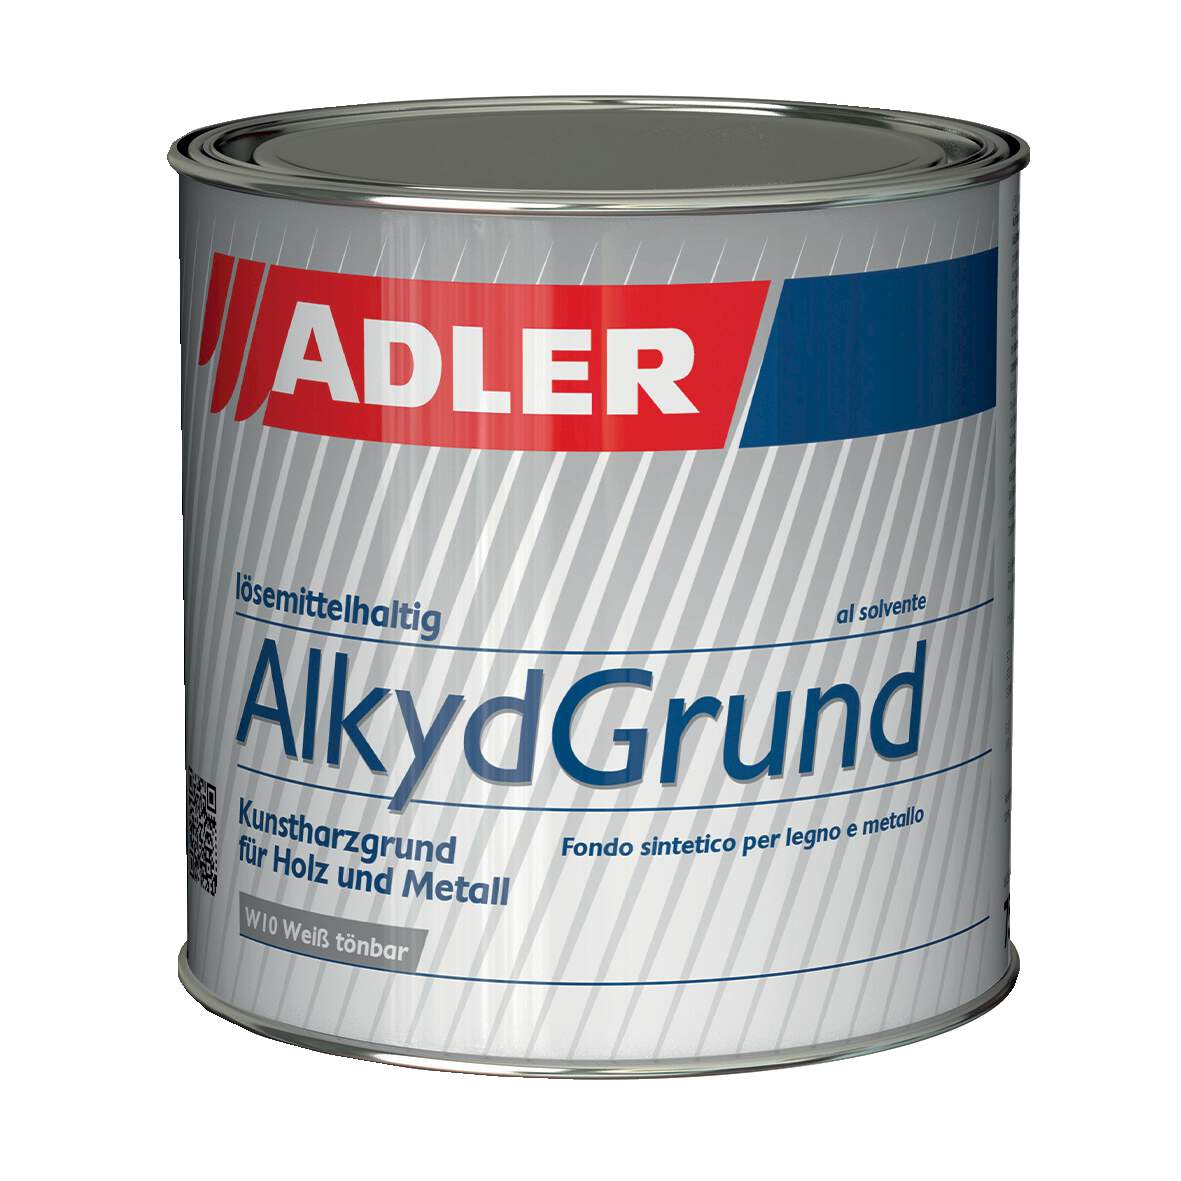 1197808 - Alkyd-Grund